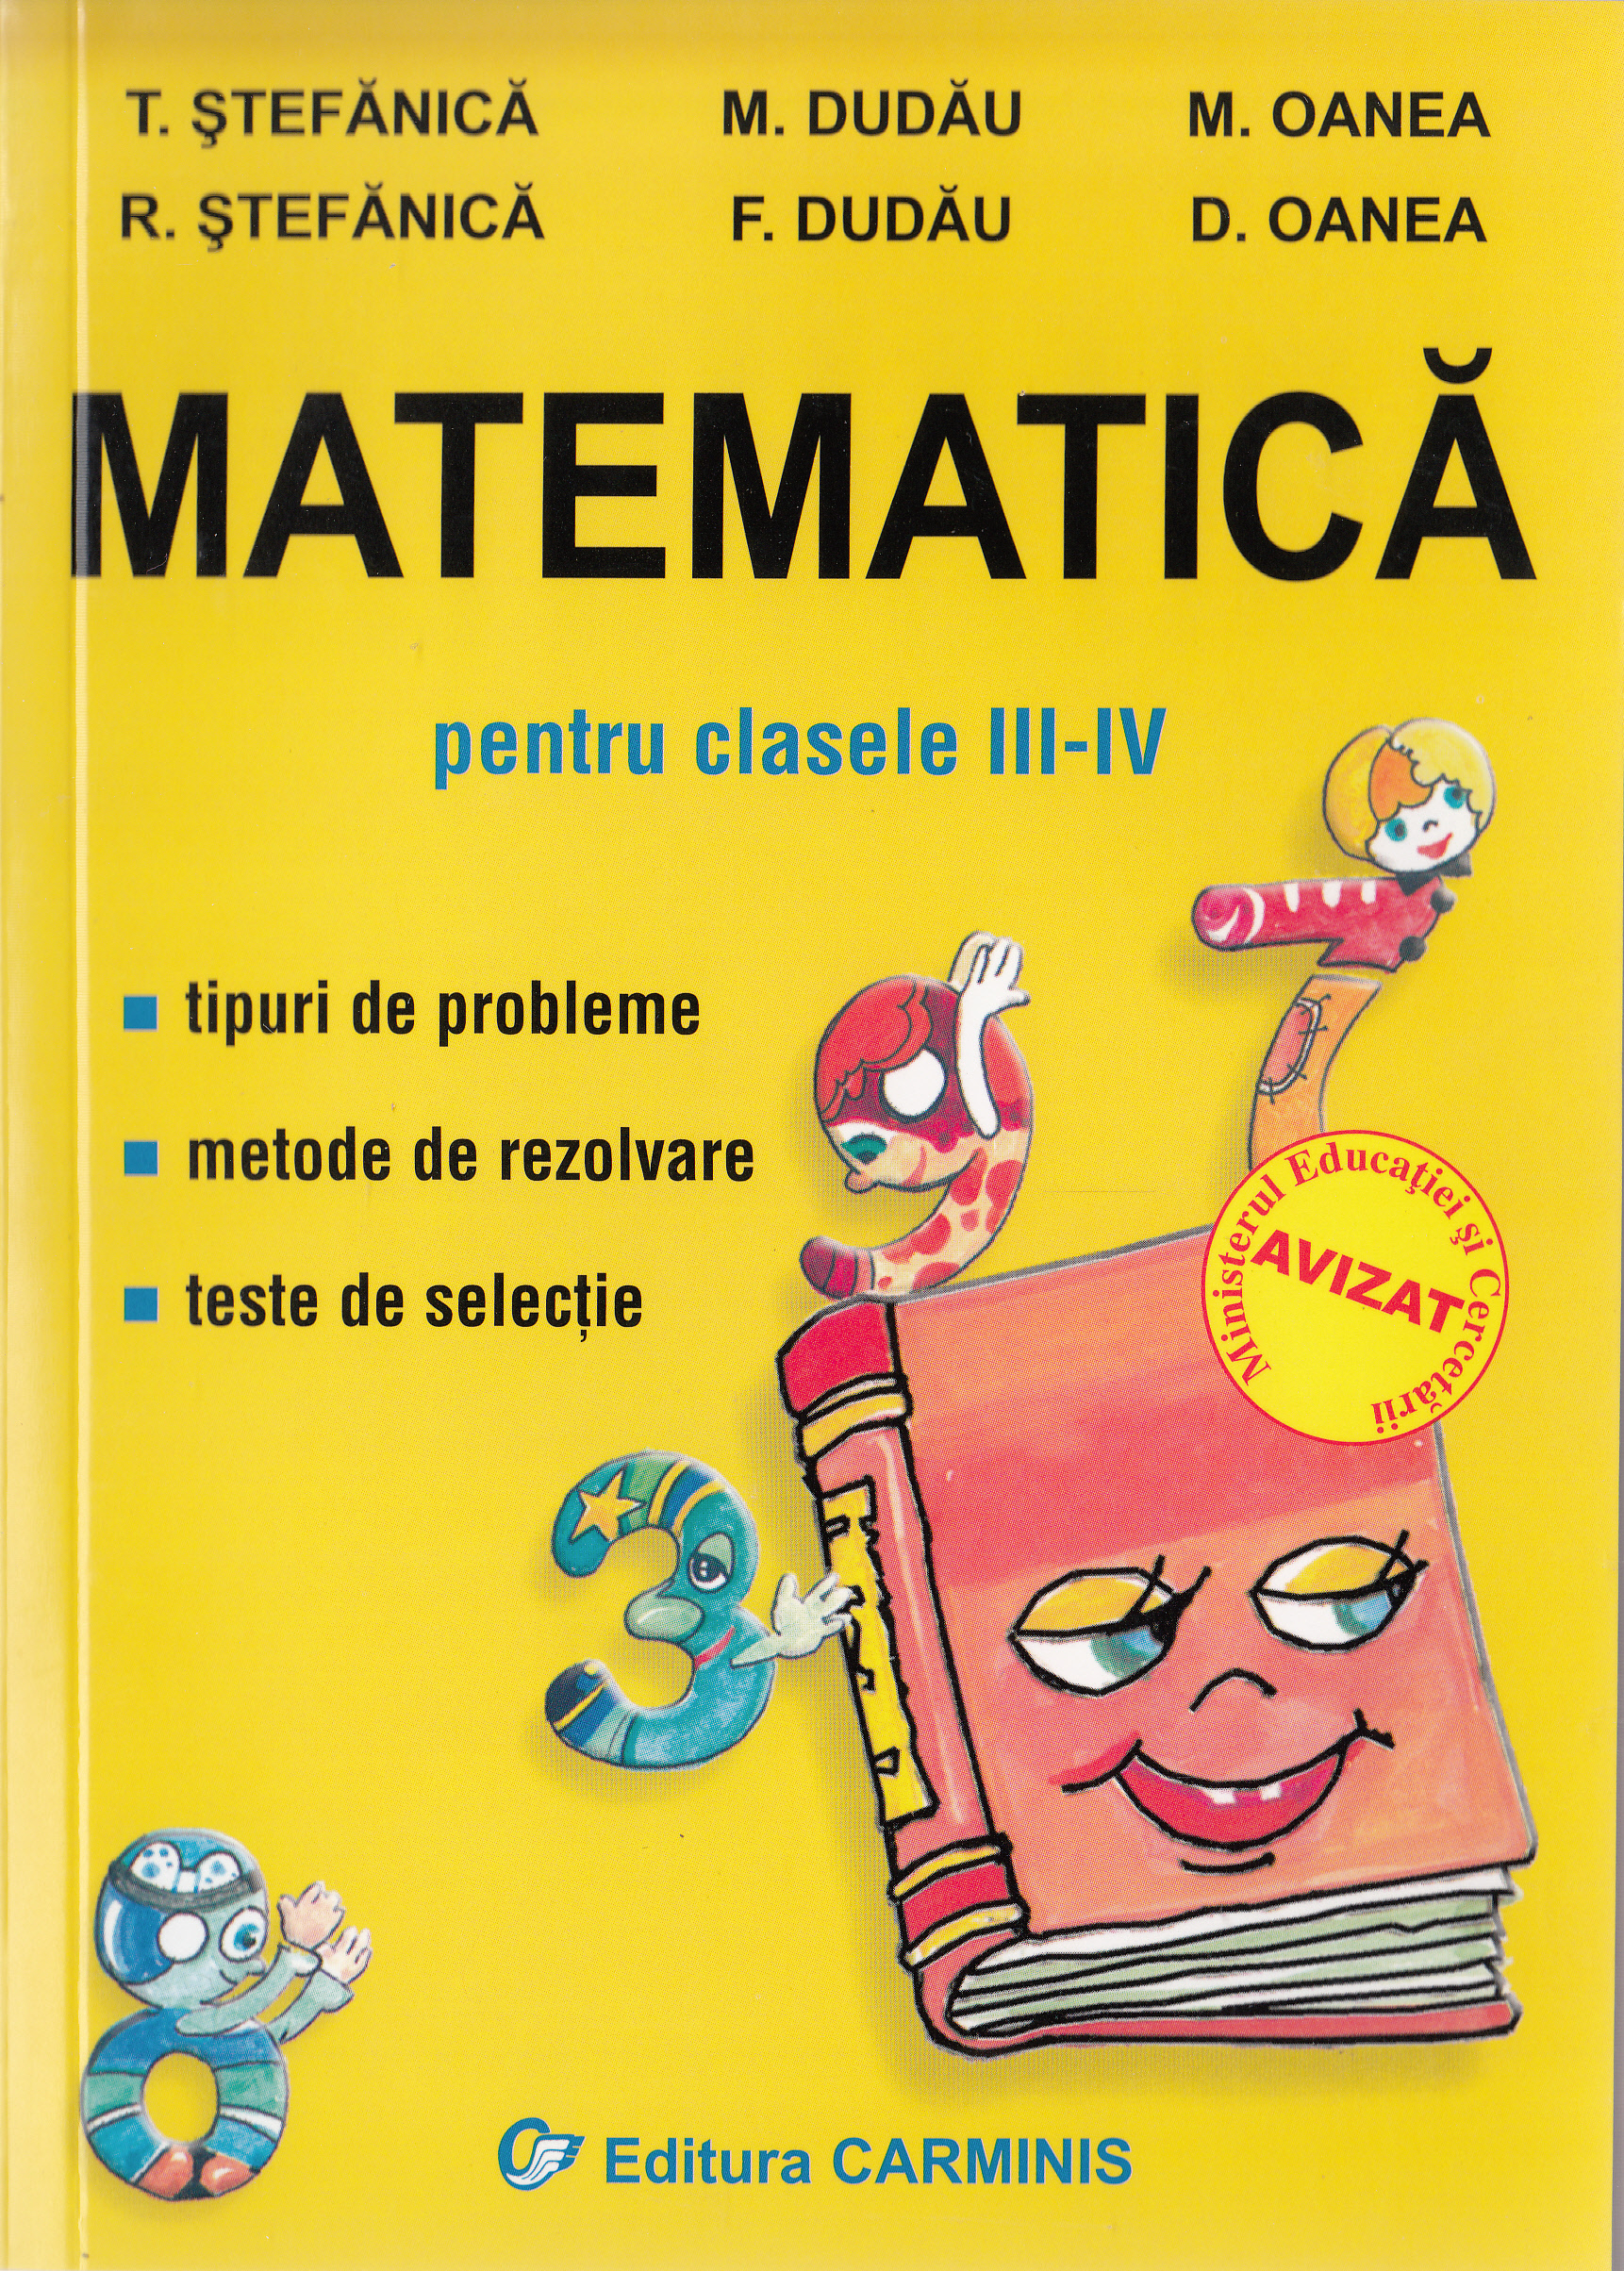 Matematica - Clasa 3-4 - Tipuri de probleme. Metode de rezolvare. Teste de selectie - T. Stefanica, M. Dudau